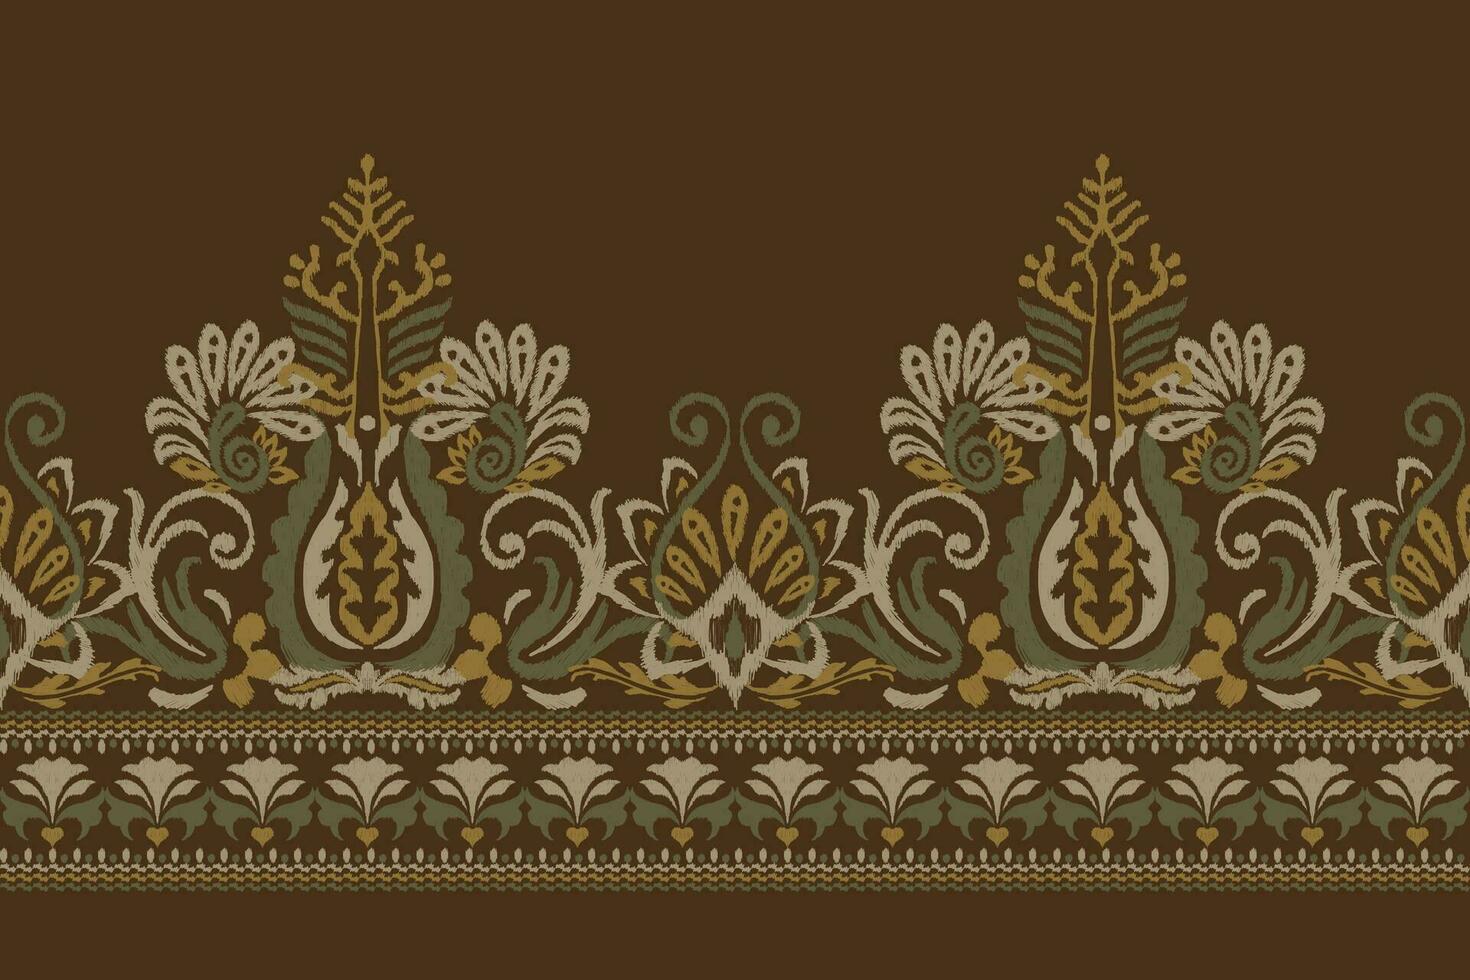 indiano ikat floreale paisley ricamo.ikat etnico orientale modello tradizionale.azteco stile astratto vettore illustrazione.disegno per trama, tessuto, abbigliamento, avvolgimento, decorazione, pareo, sciarpa, tovaglietta.